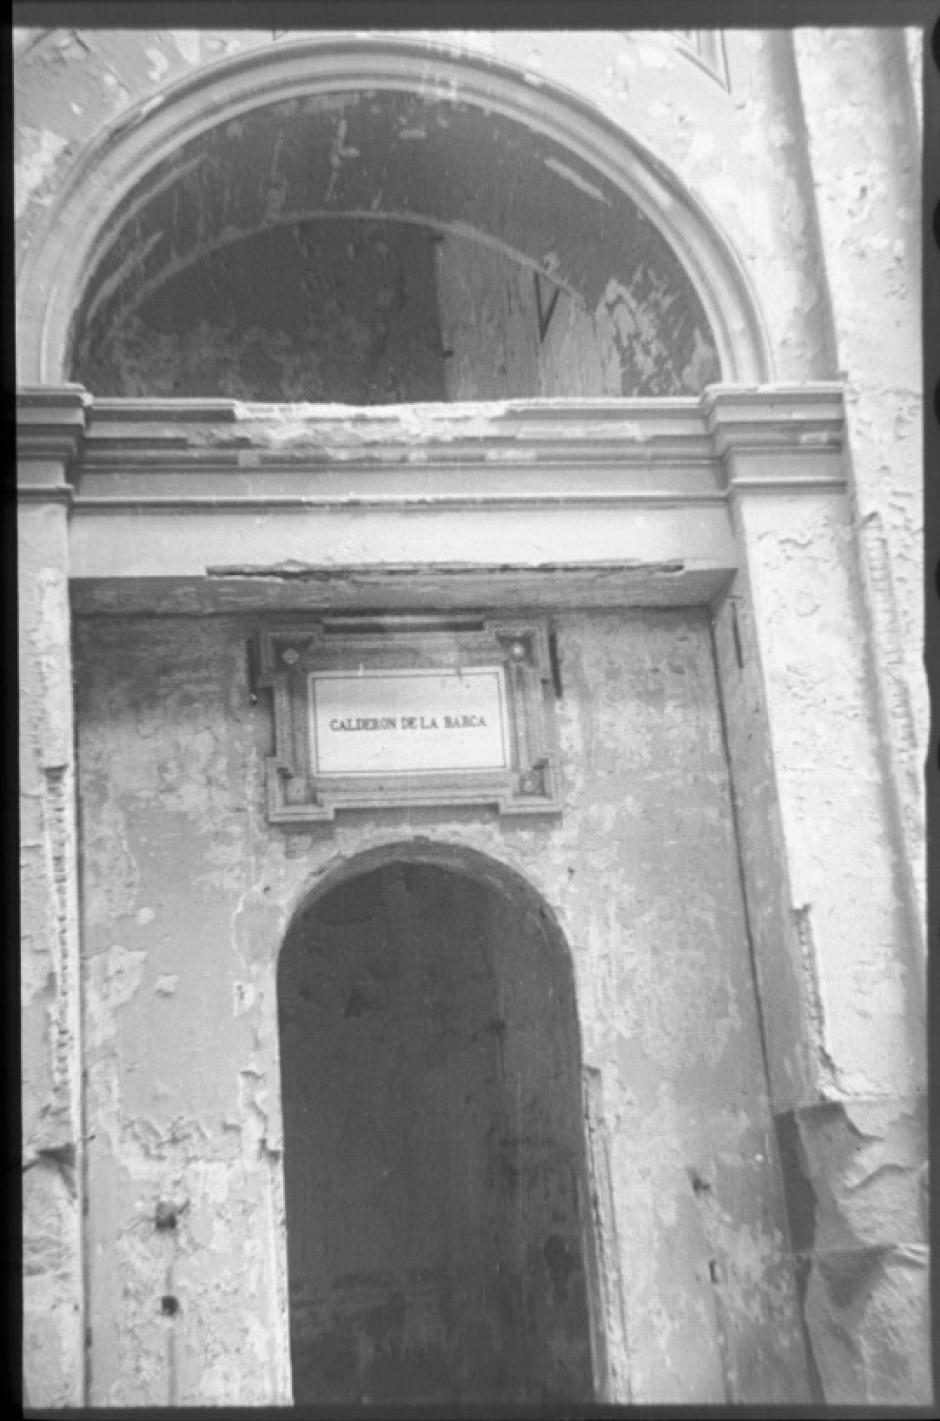 Foto de Santos Yubero de la capilla de Calderón, quemada en 1931